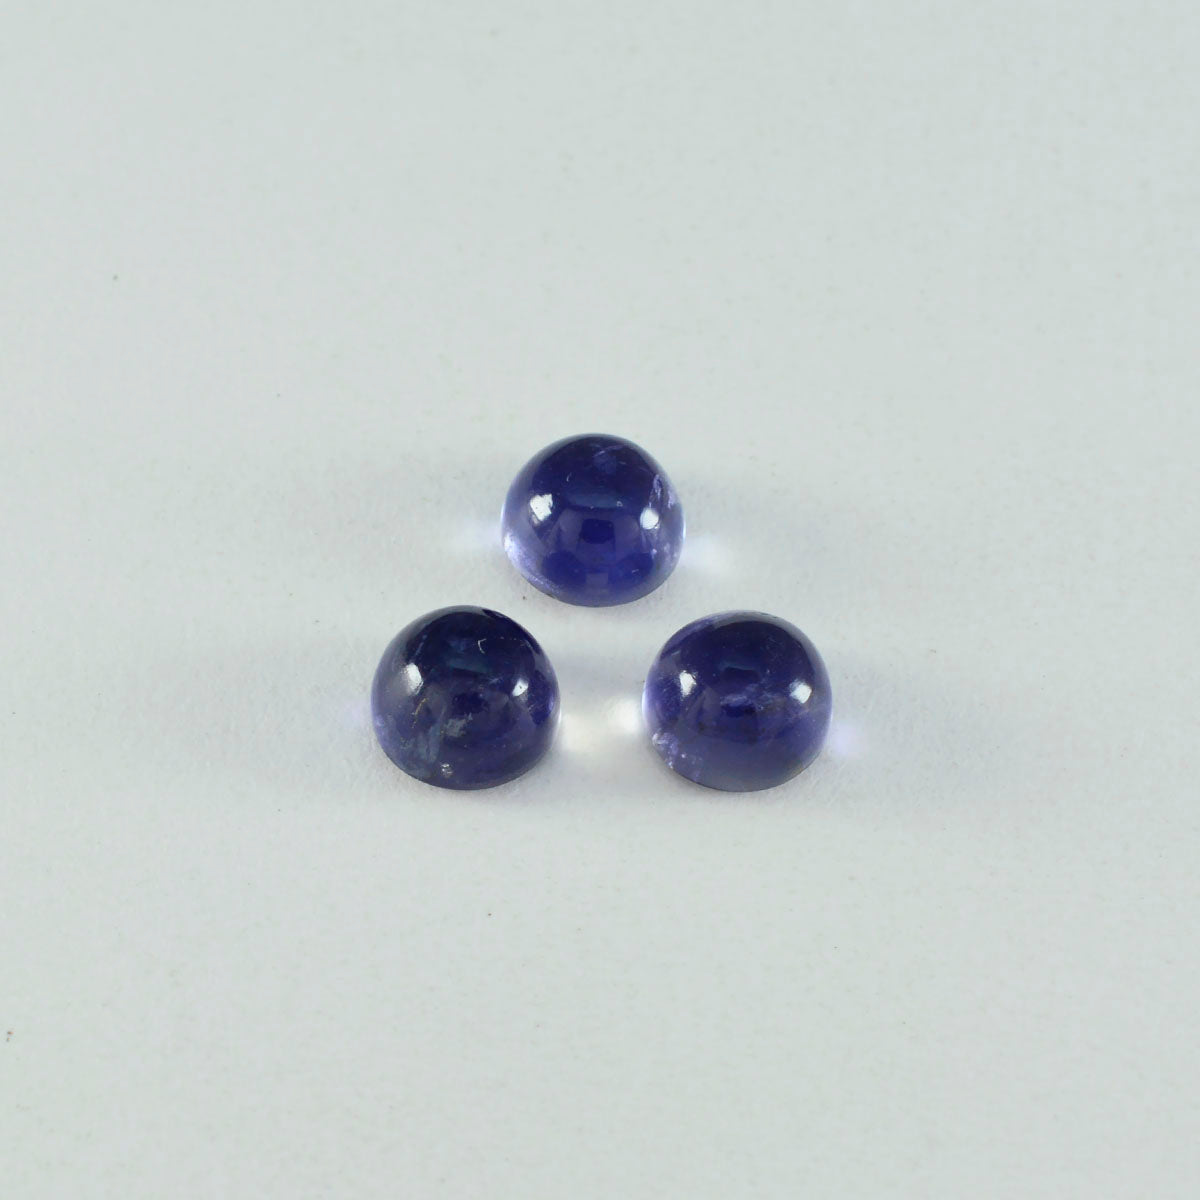 Riyogems 1 Stück blauer Iolith-Cabochon, 10 x 10 mm, runde Form, gute Qualität, loser Edelstein